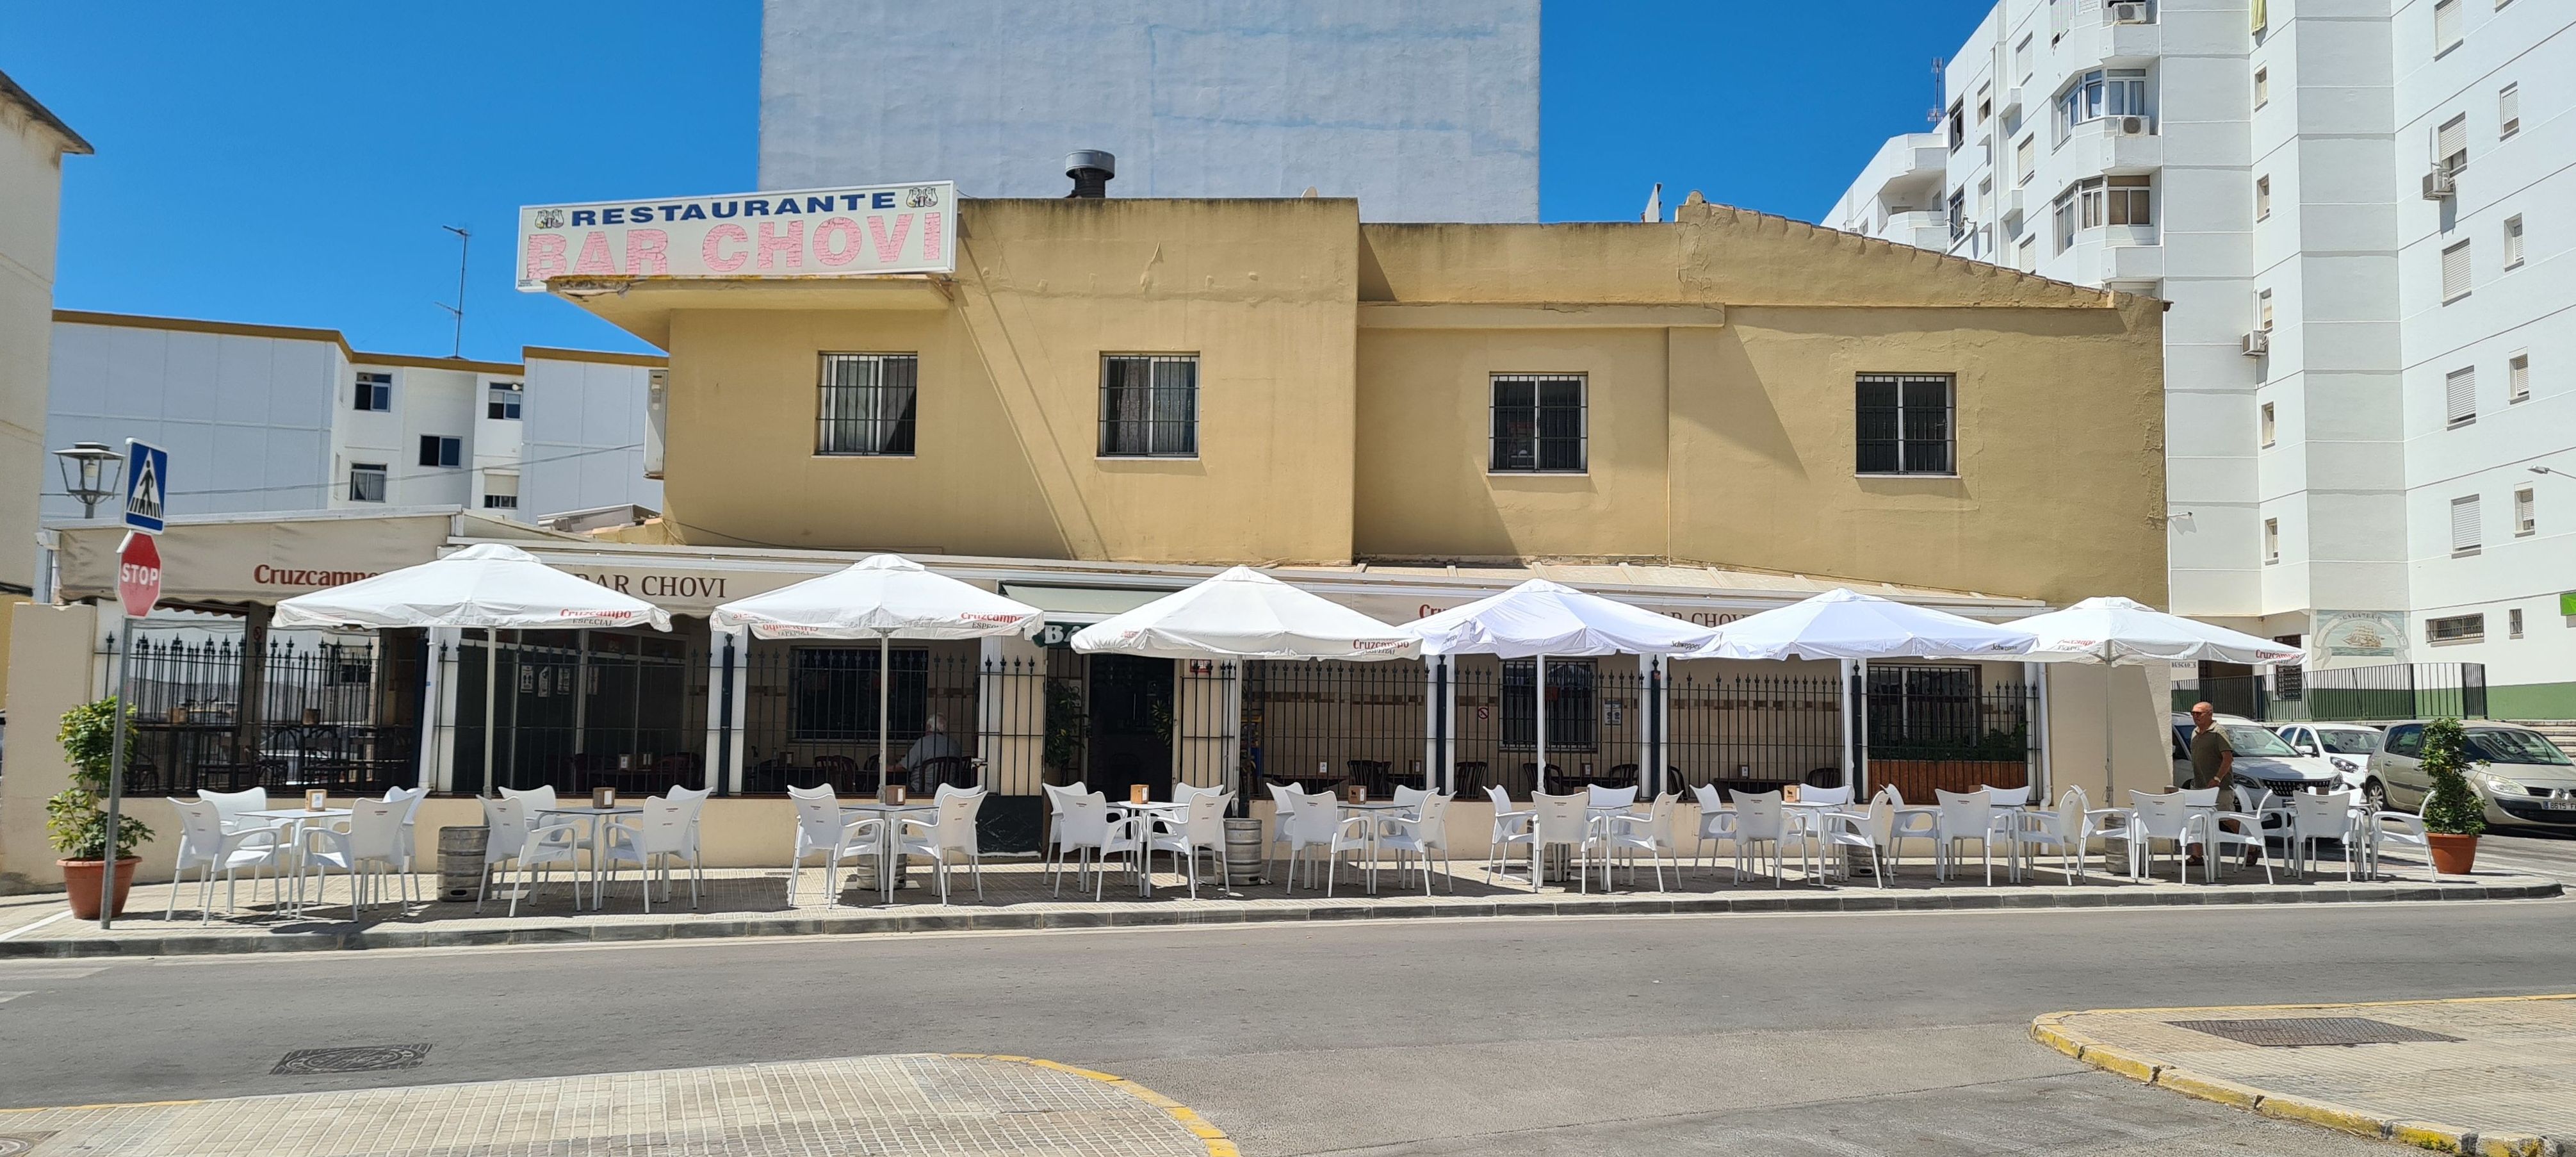 Foto 3 de Cocina andaluza en El Puerto de Santa María | Restaurante Bar Chovi